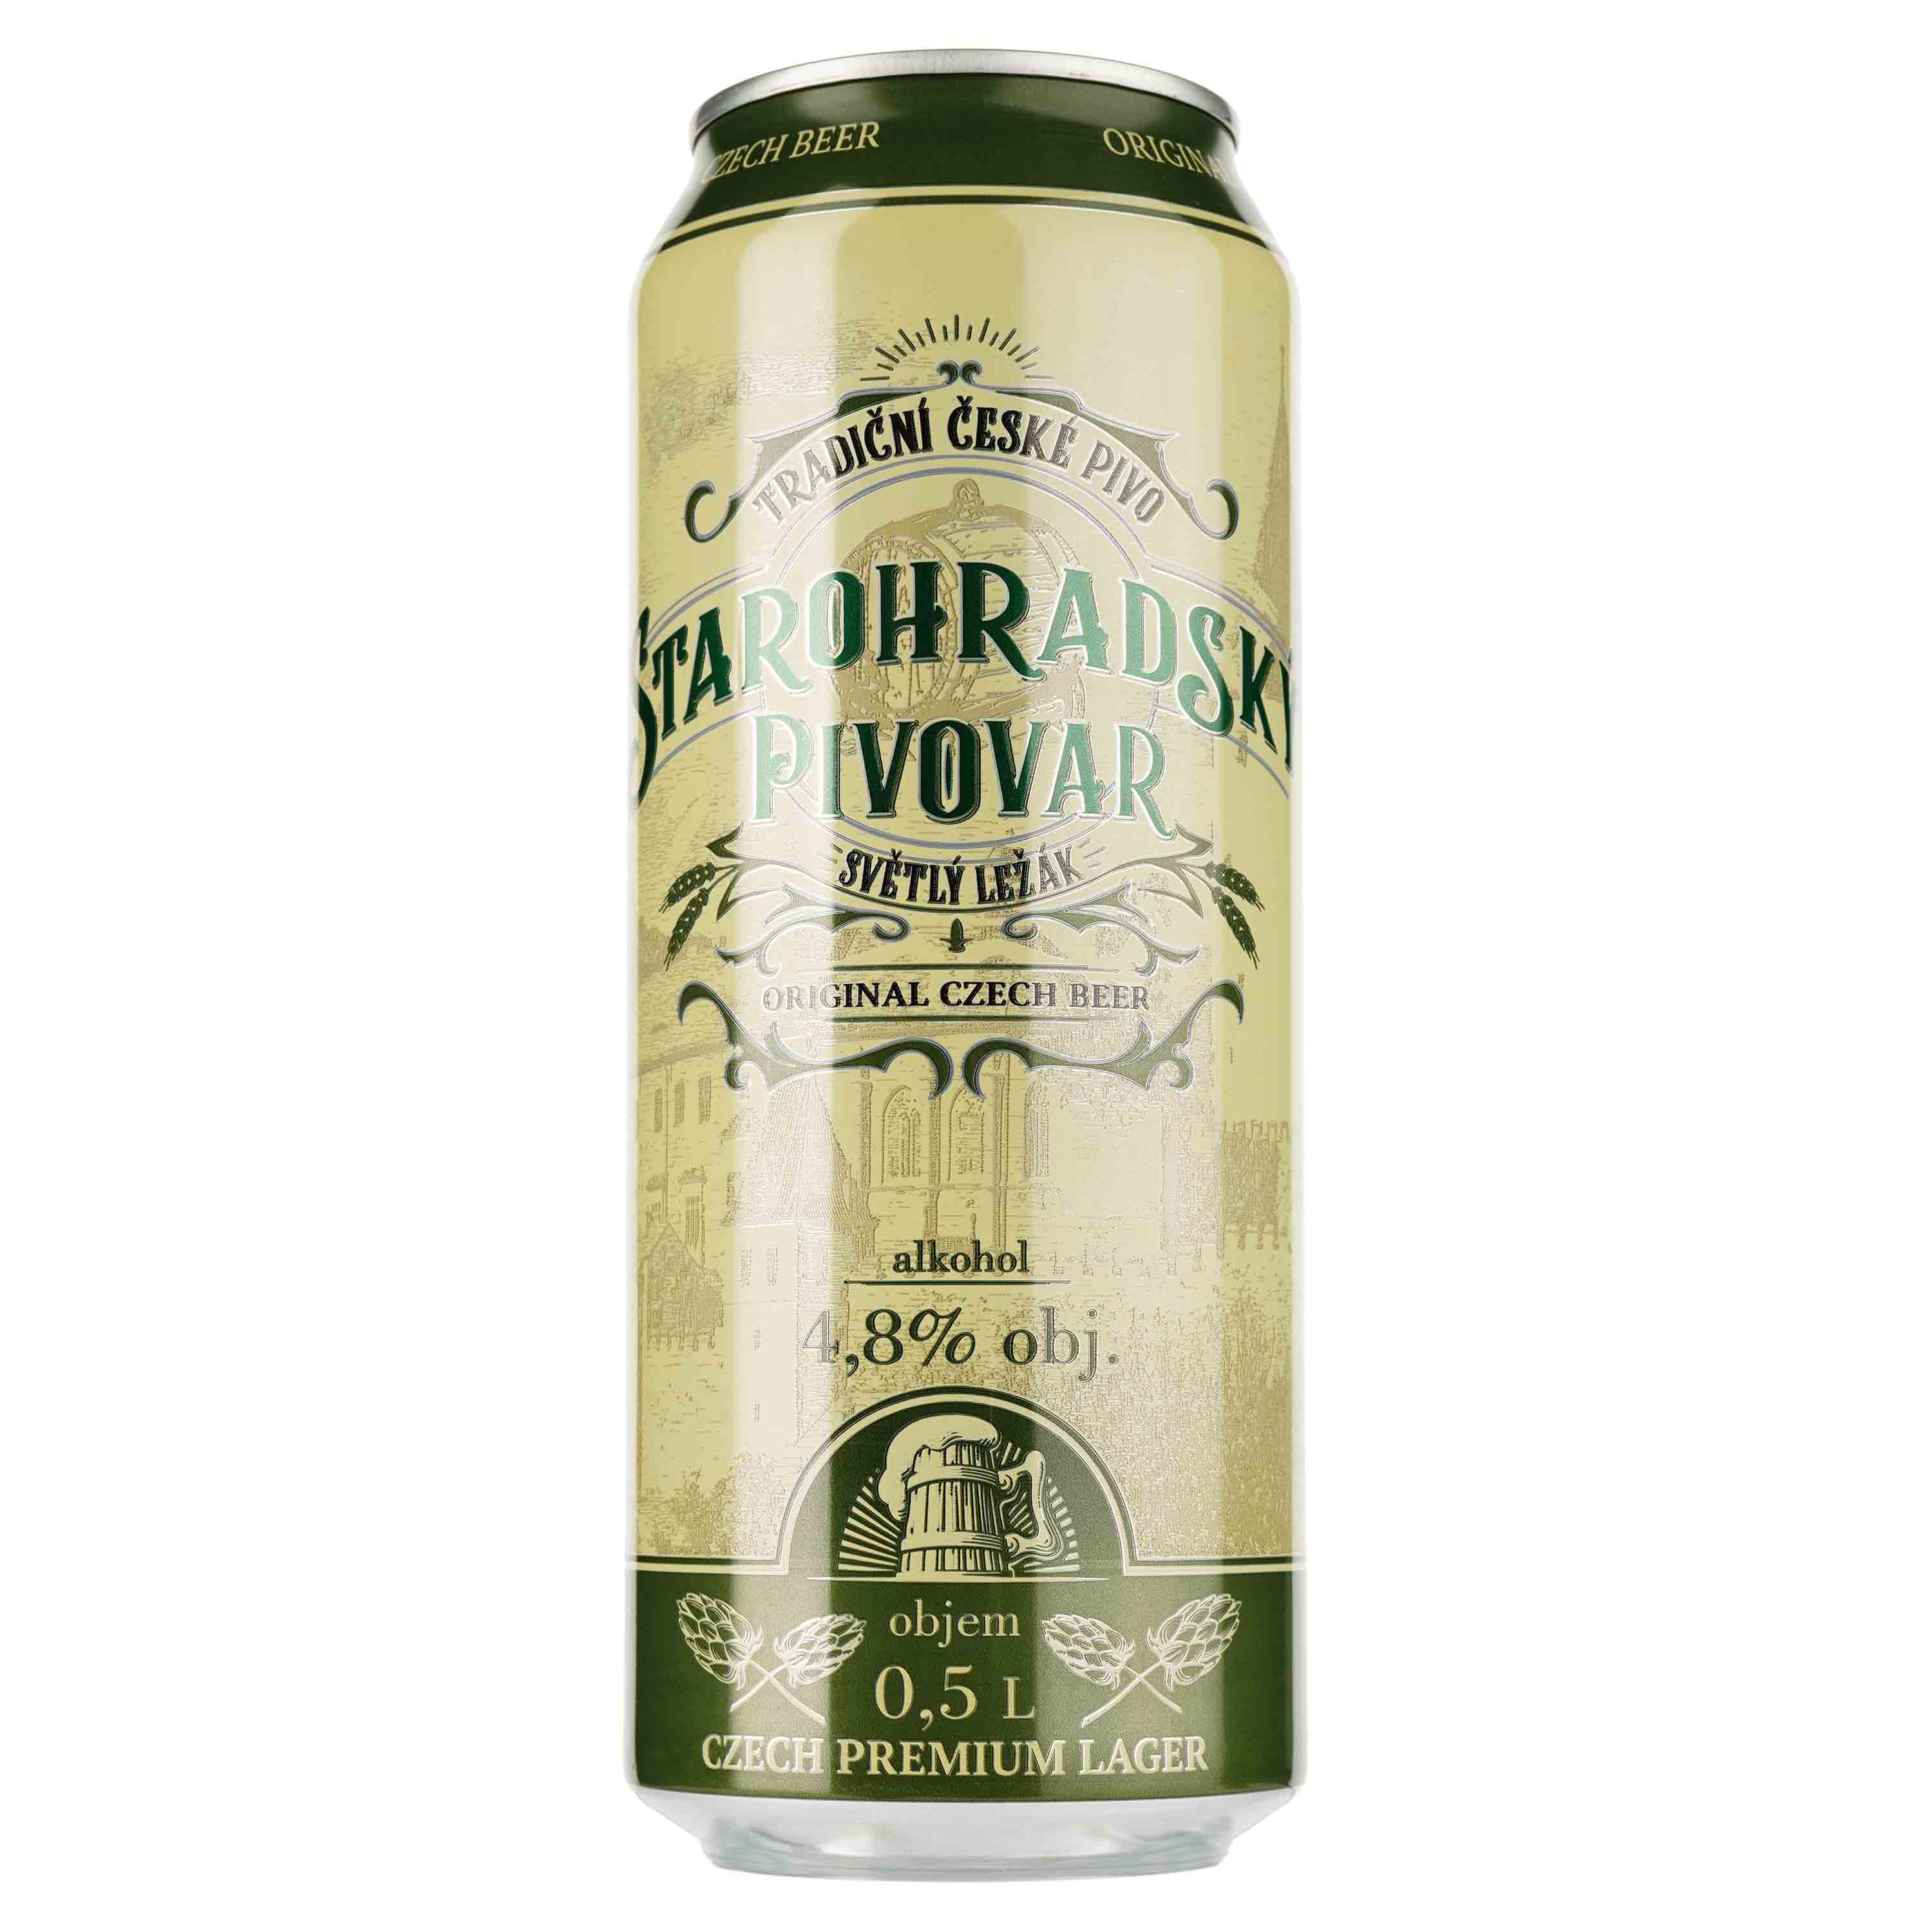 Пиво Starohradsky pivovar, світле, фільтроване, 4,8%, з/б, 0,5 л - фото 1